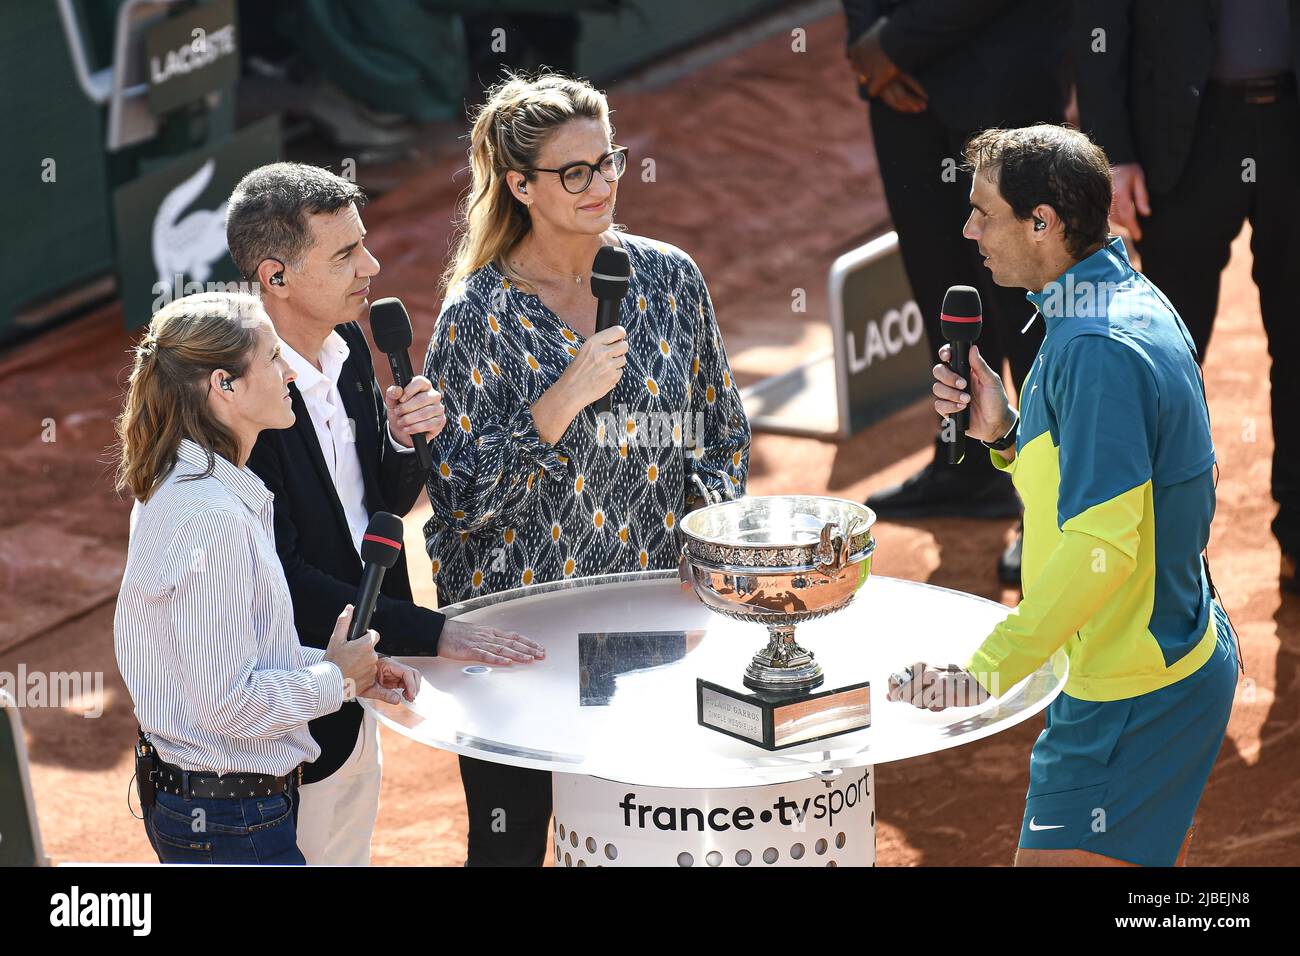 Rome, France: 5 juin 2022, Rafael "Rafa" Nadal d'Espagne avec le trophée  est interviewé par la chaîne de télévision française "France télévisions"  ("France TV Sport", "France 2") avec Justine Henin, Laurent Luyat